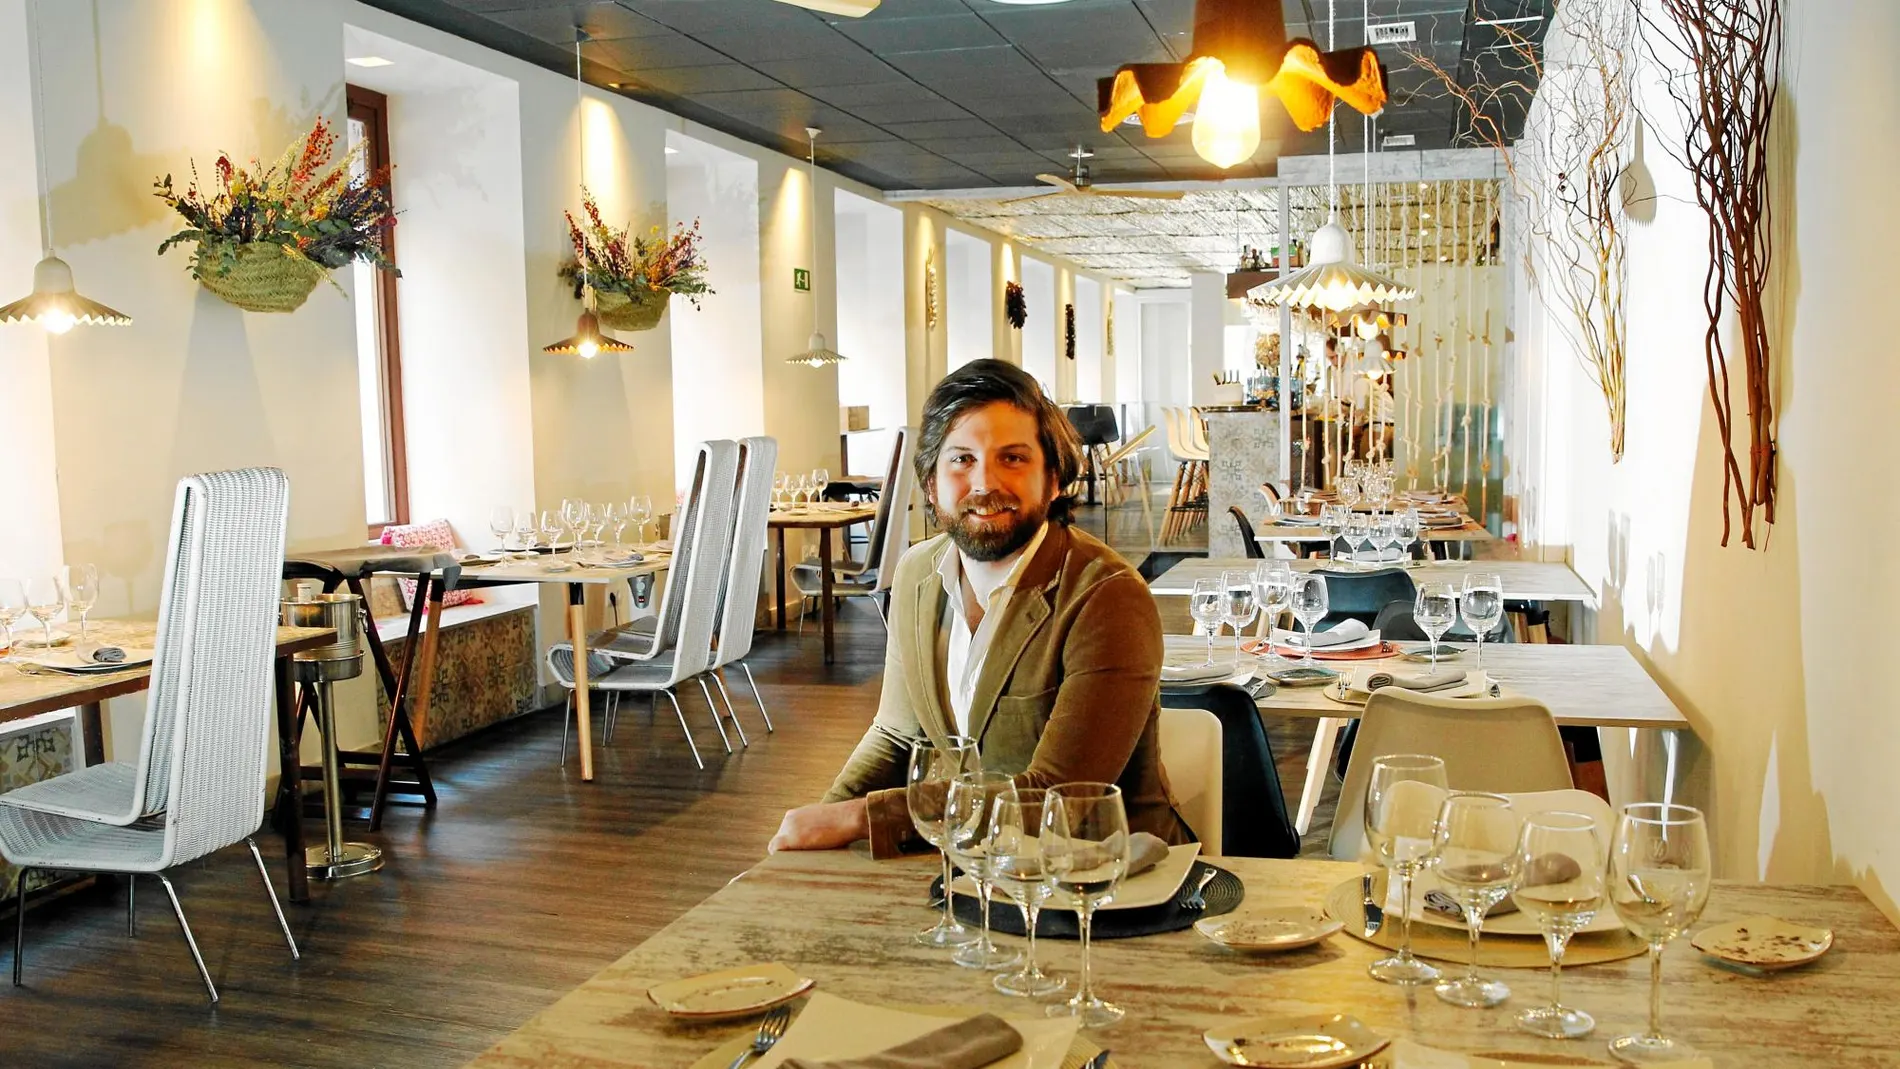 El restaurante La Naya está situado en pleno corazón del barrio de Chamberí